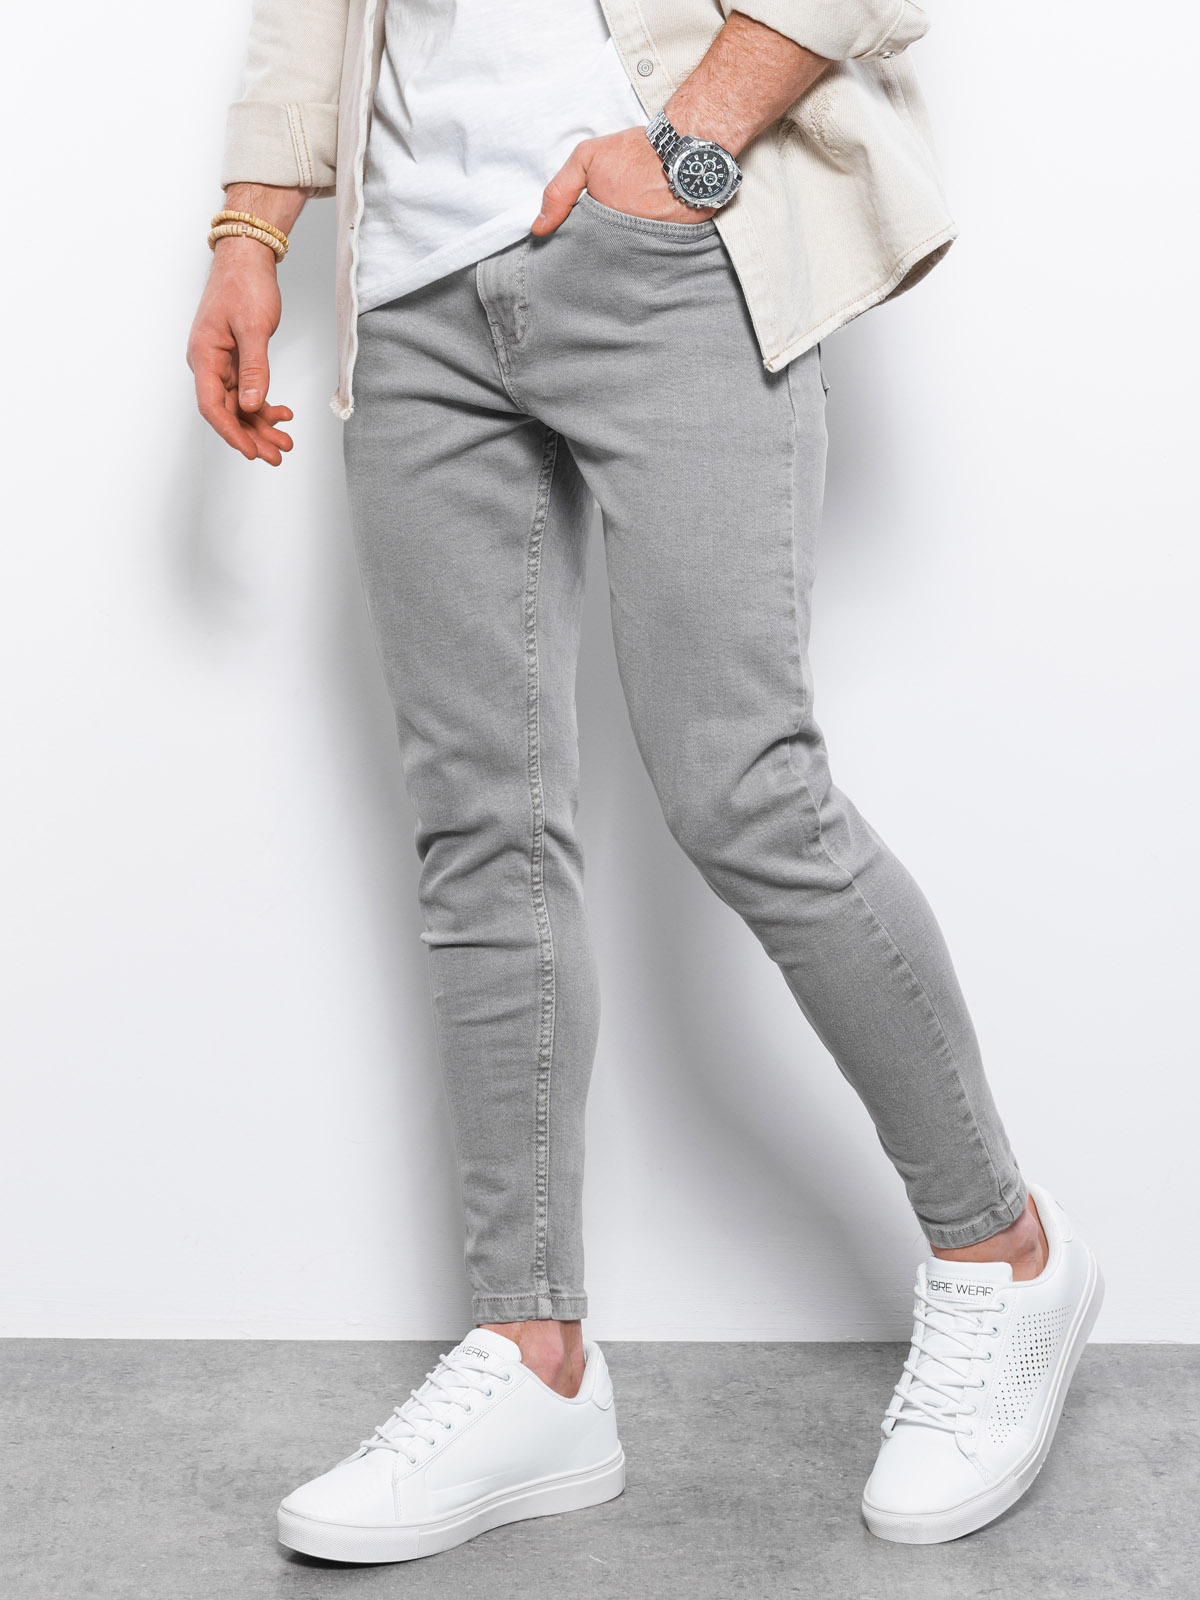 Spodnie męskie jeansowe o kroju SLIM FIT - szare V1 P1058